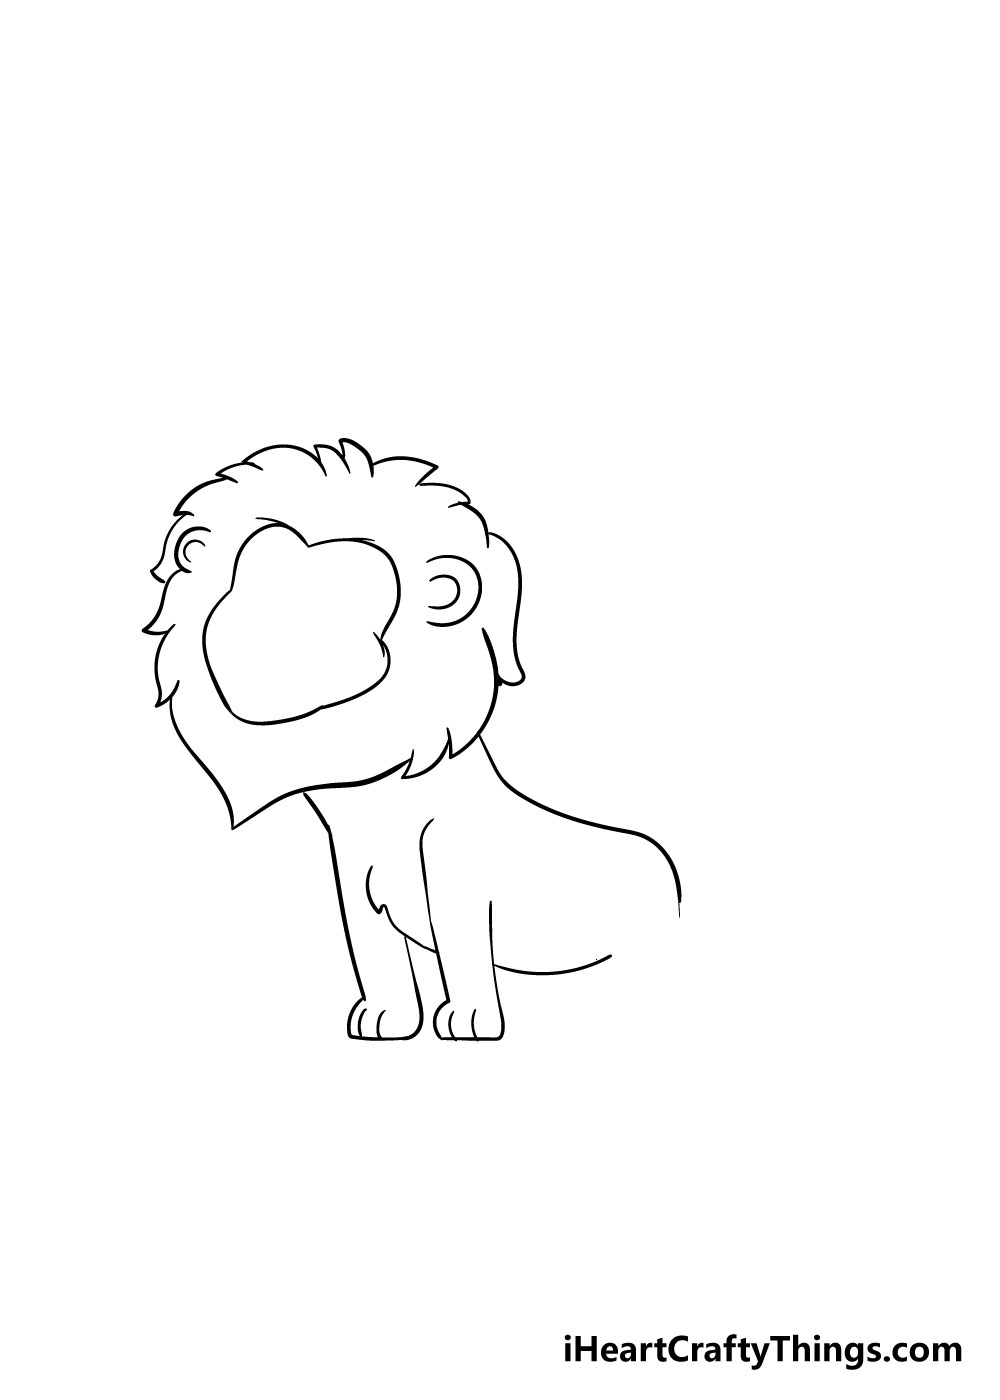 How to draw a lion 4 - Hướng dẫn cách vẽ con sư tử đơn giản với 8 bước cơ bản